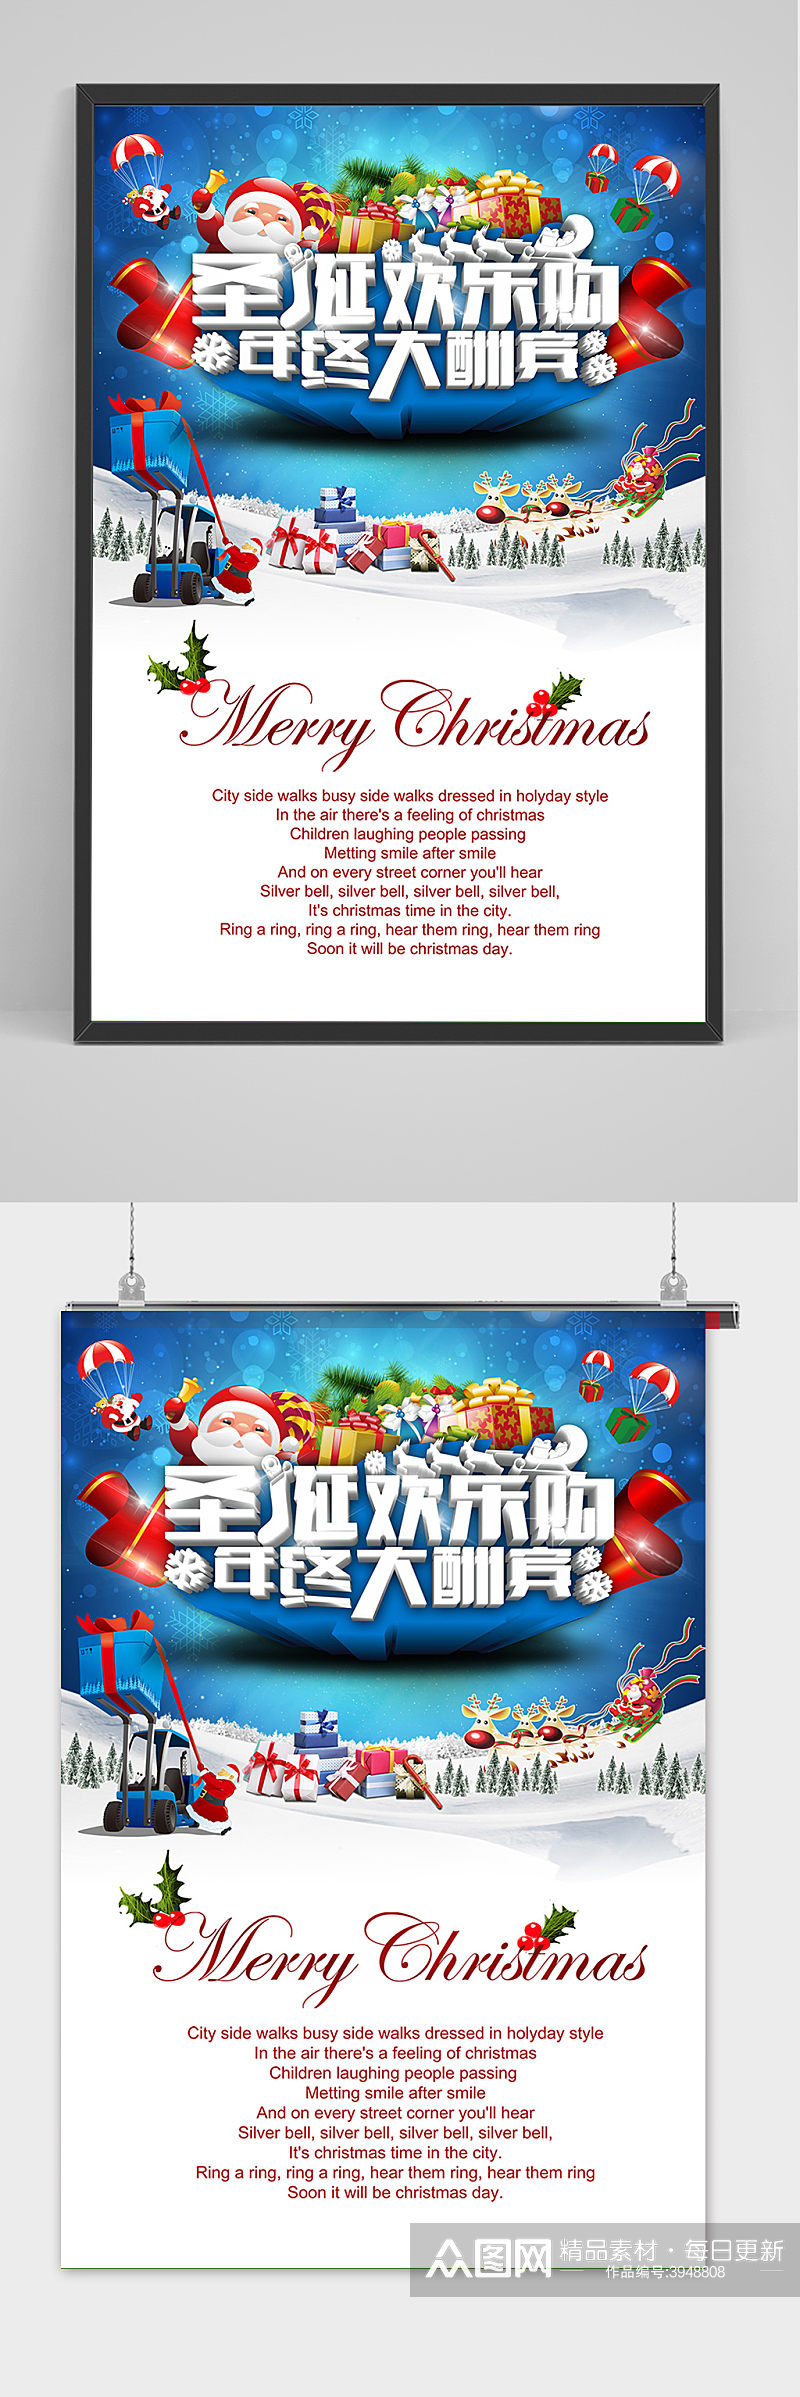 清新圣诞节快乐大酬宾宣传海报素材